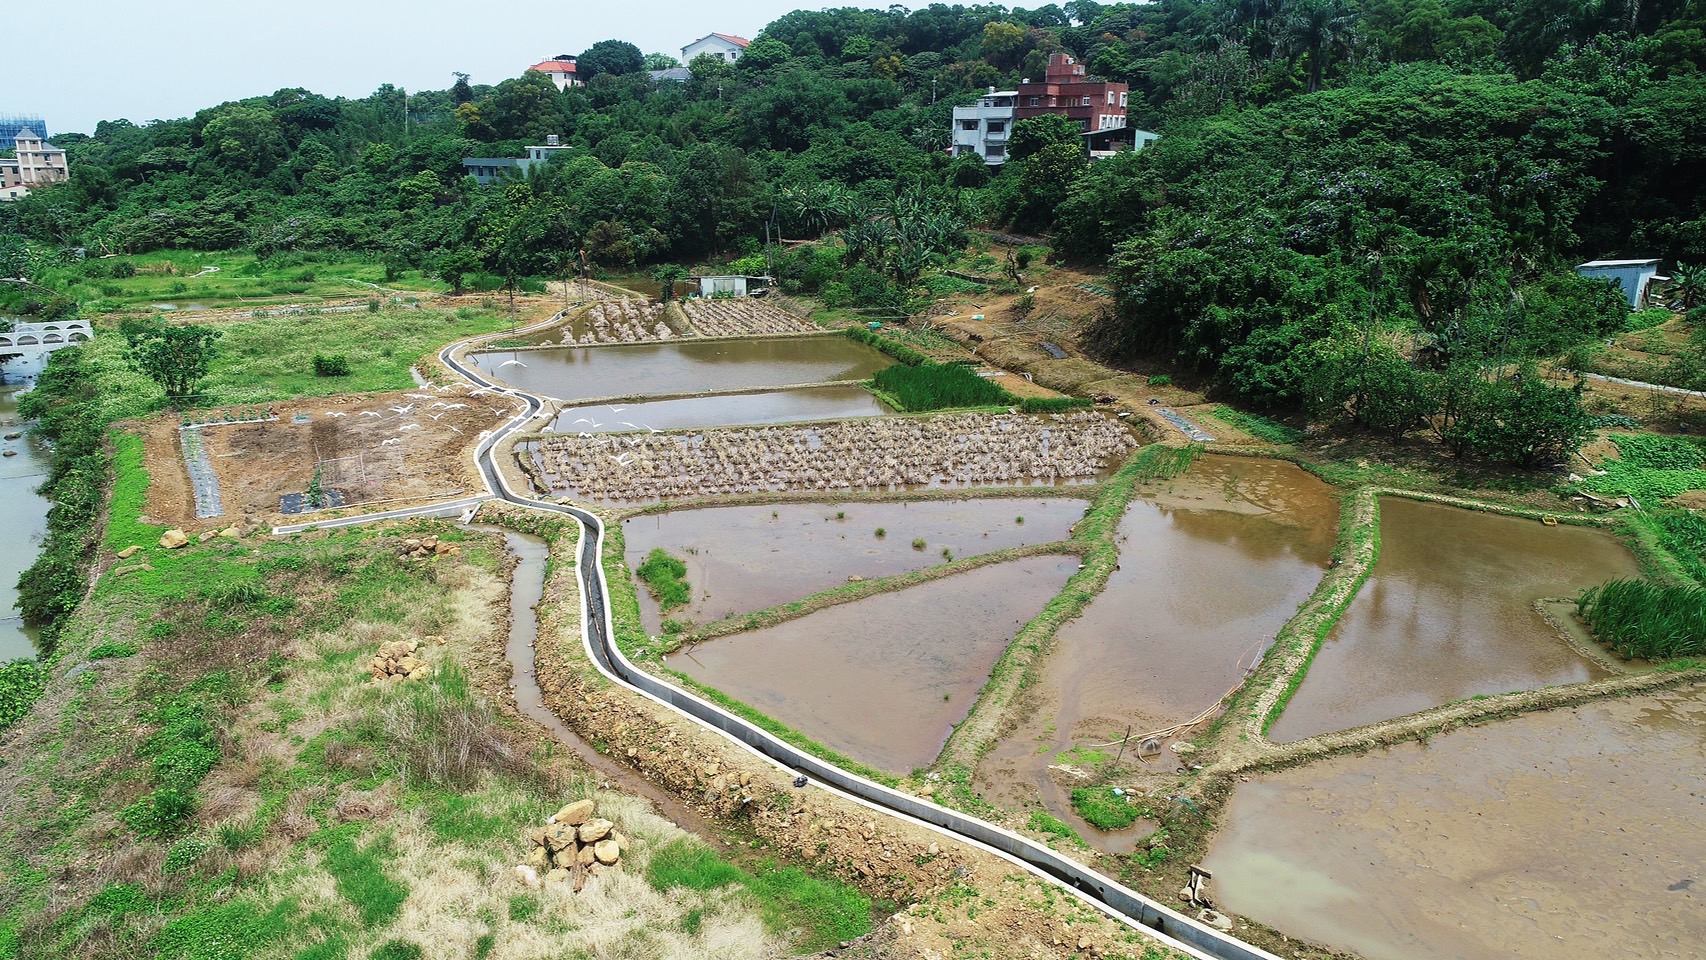 修繕錫板溪區域灌溉排水渠道